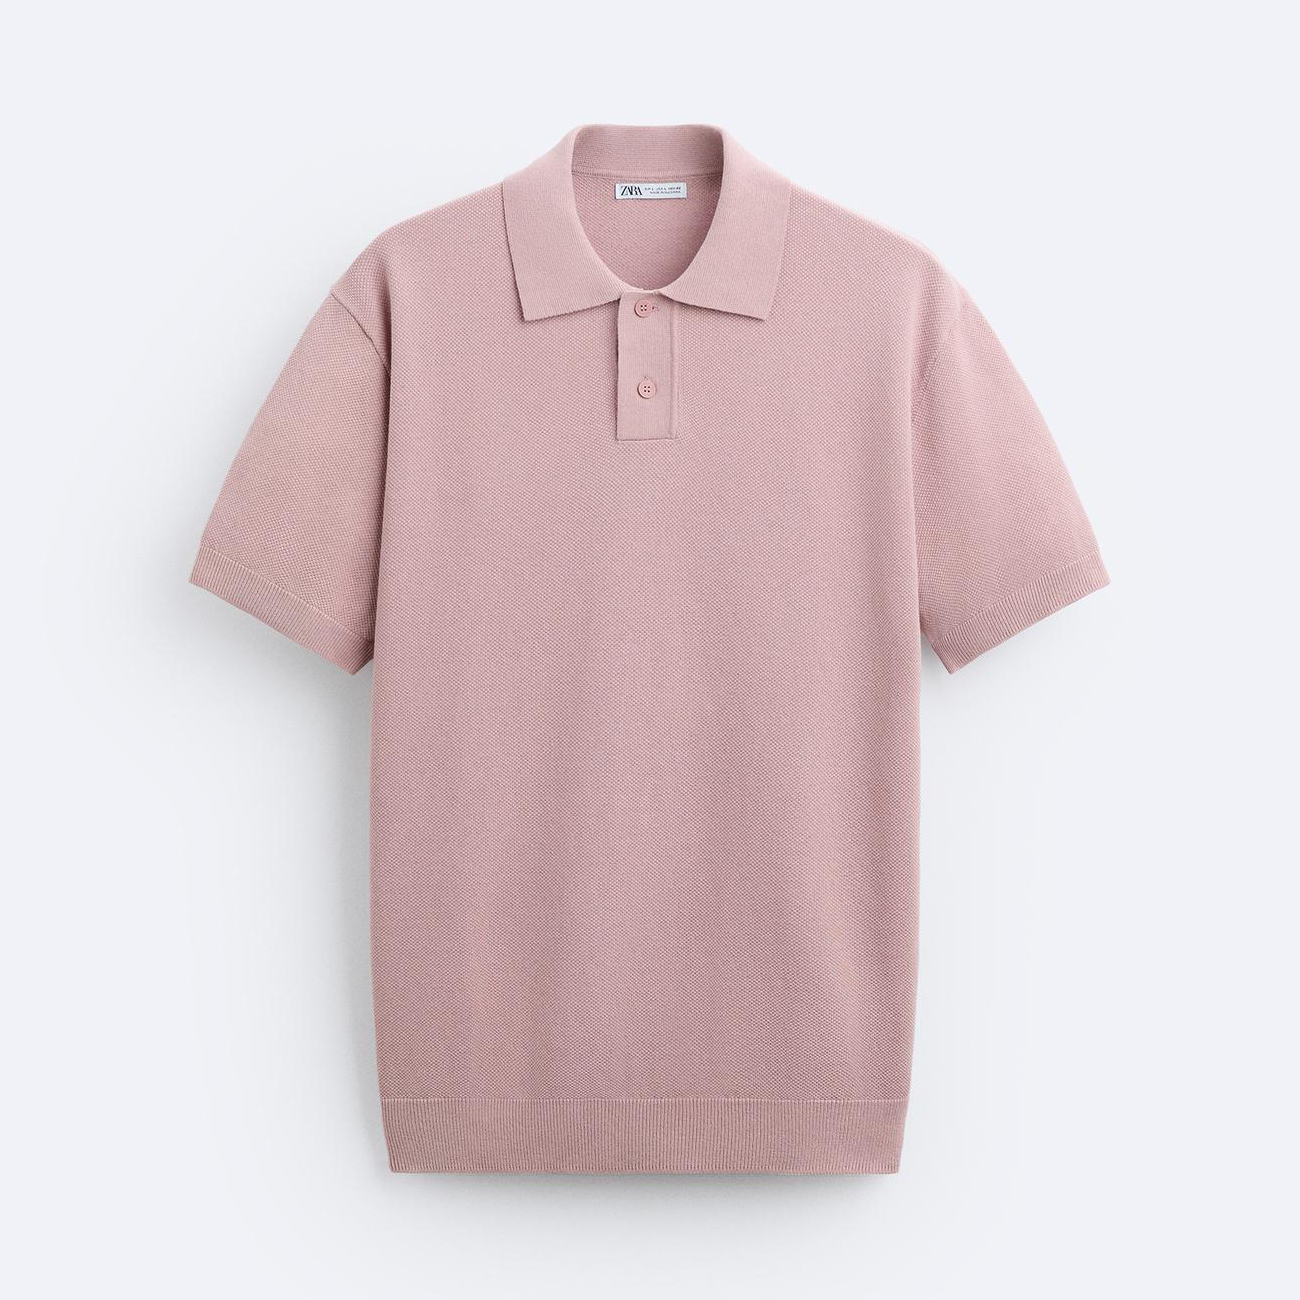 Поло Zara Textured Knit, розовый футболка поло zara textured knit песочный